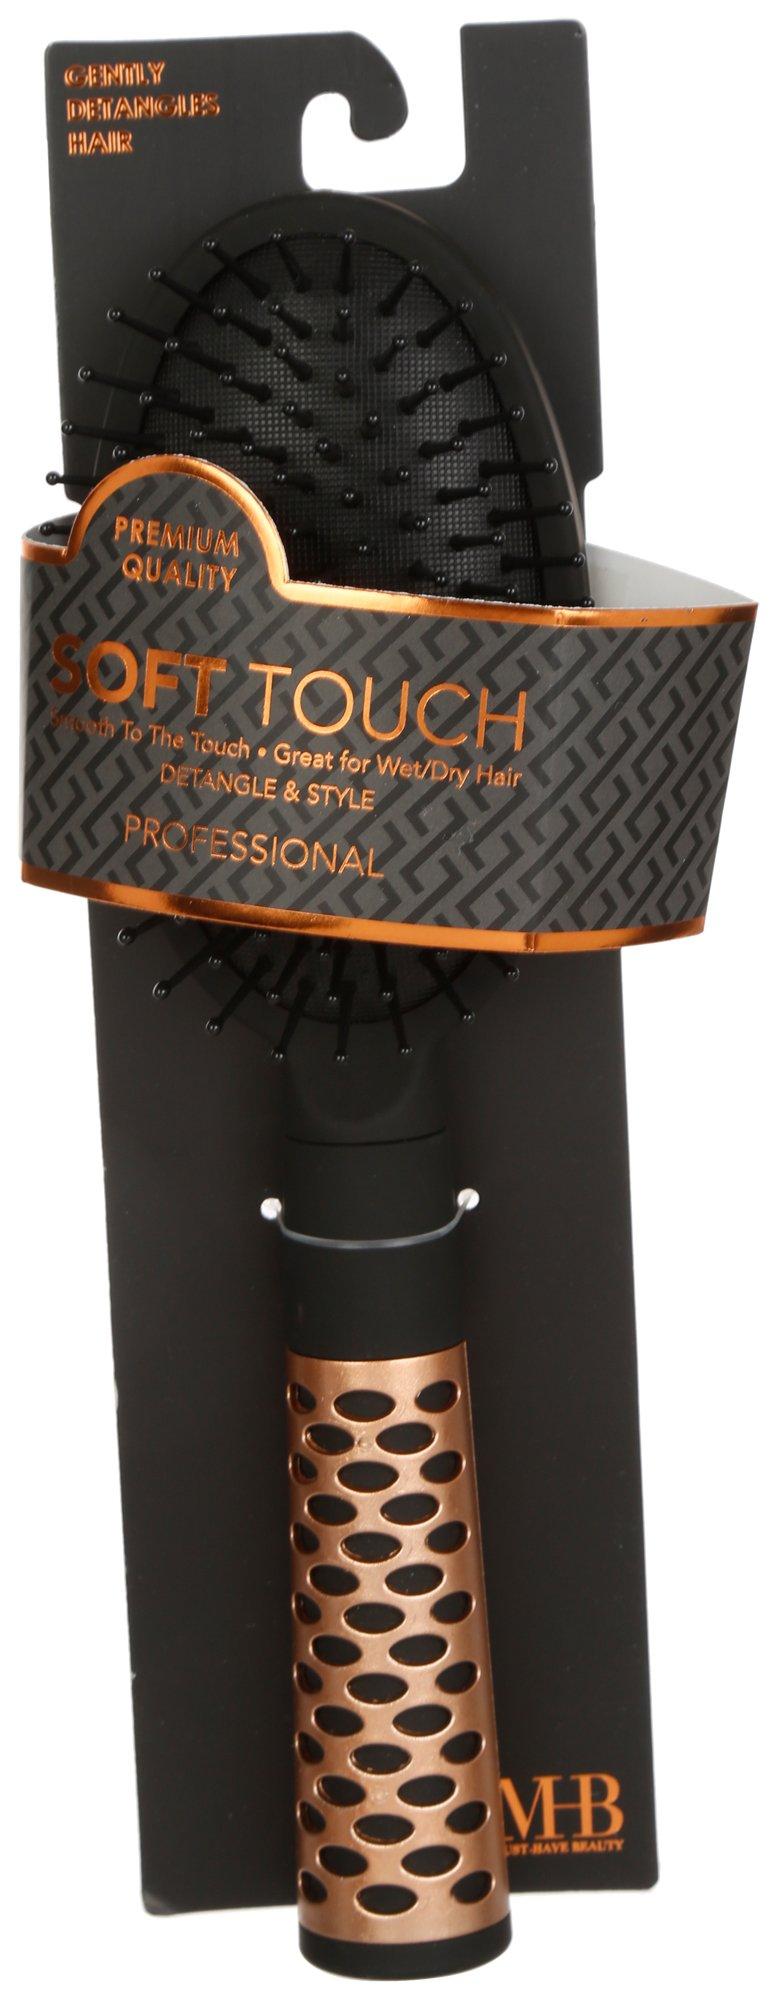 Soft Touch Detangler Brush